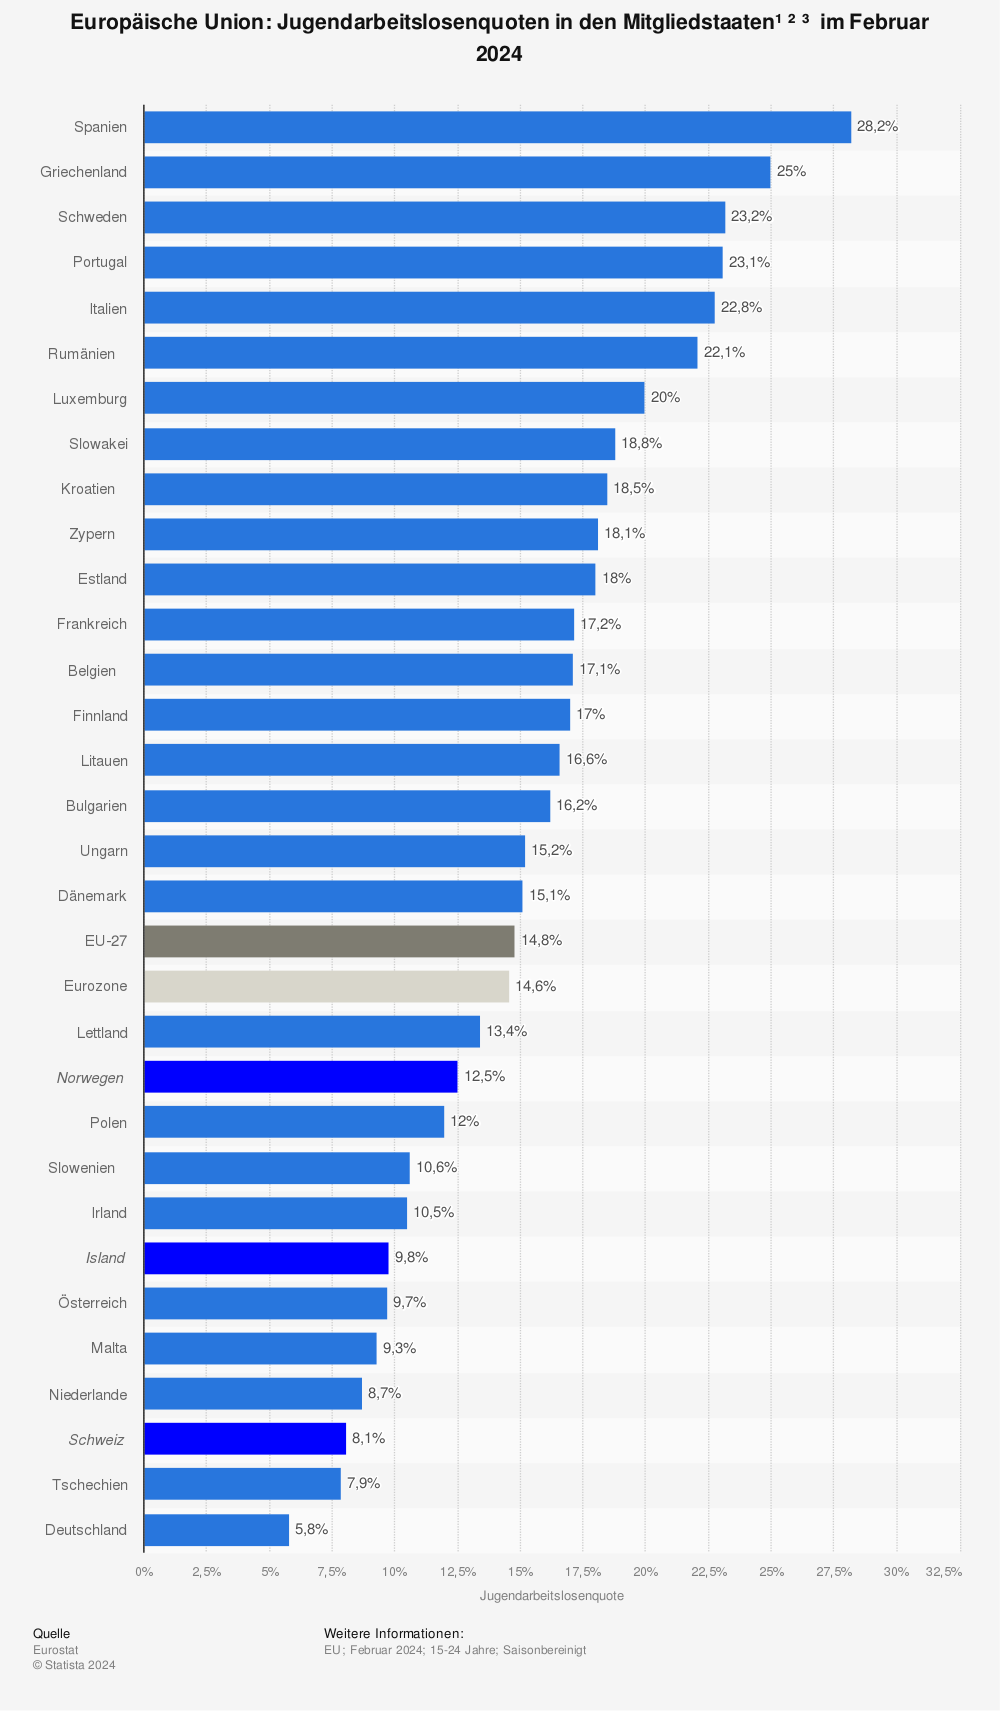 Jugendarbeitslosenquote in den EU-Ländern Mai 2013